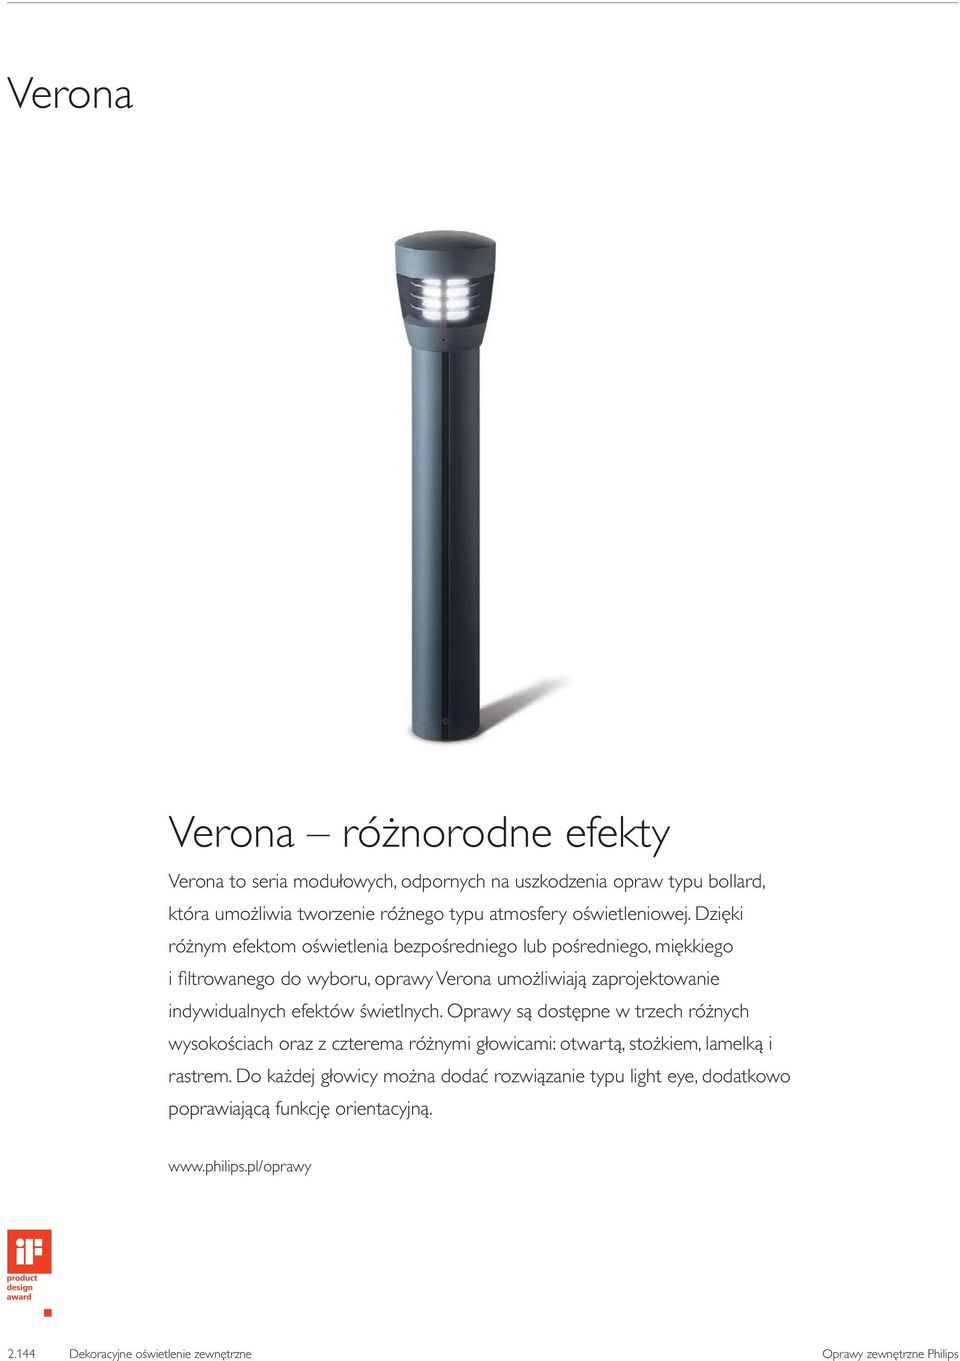 Dzięki różnym efektom oświetlenia bezpośredniego lub pośredniego, miękkiego i filtrowanego do wyboru, oprawy Verona umożliwiają zaprojektowanie indywidualnych